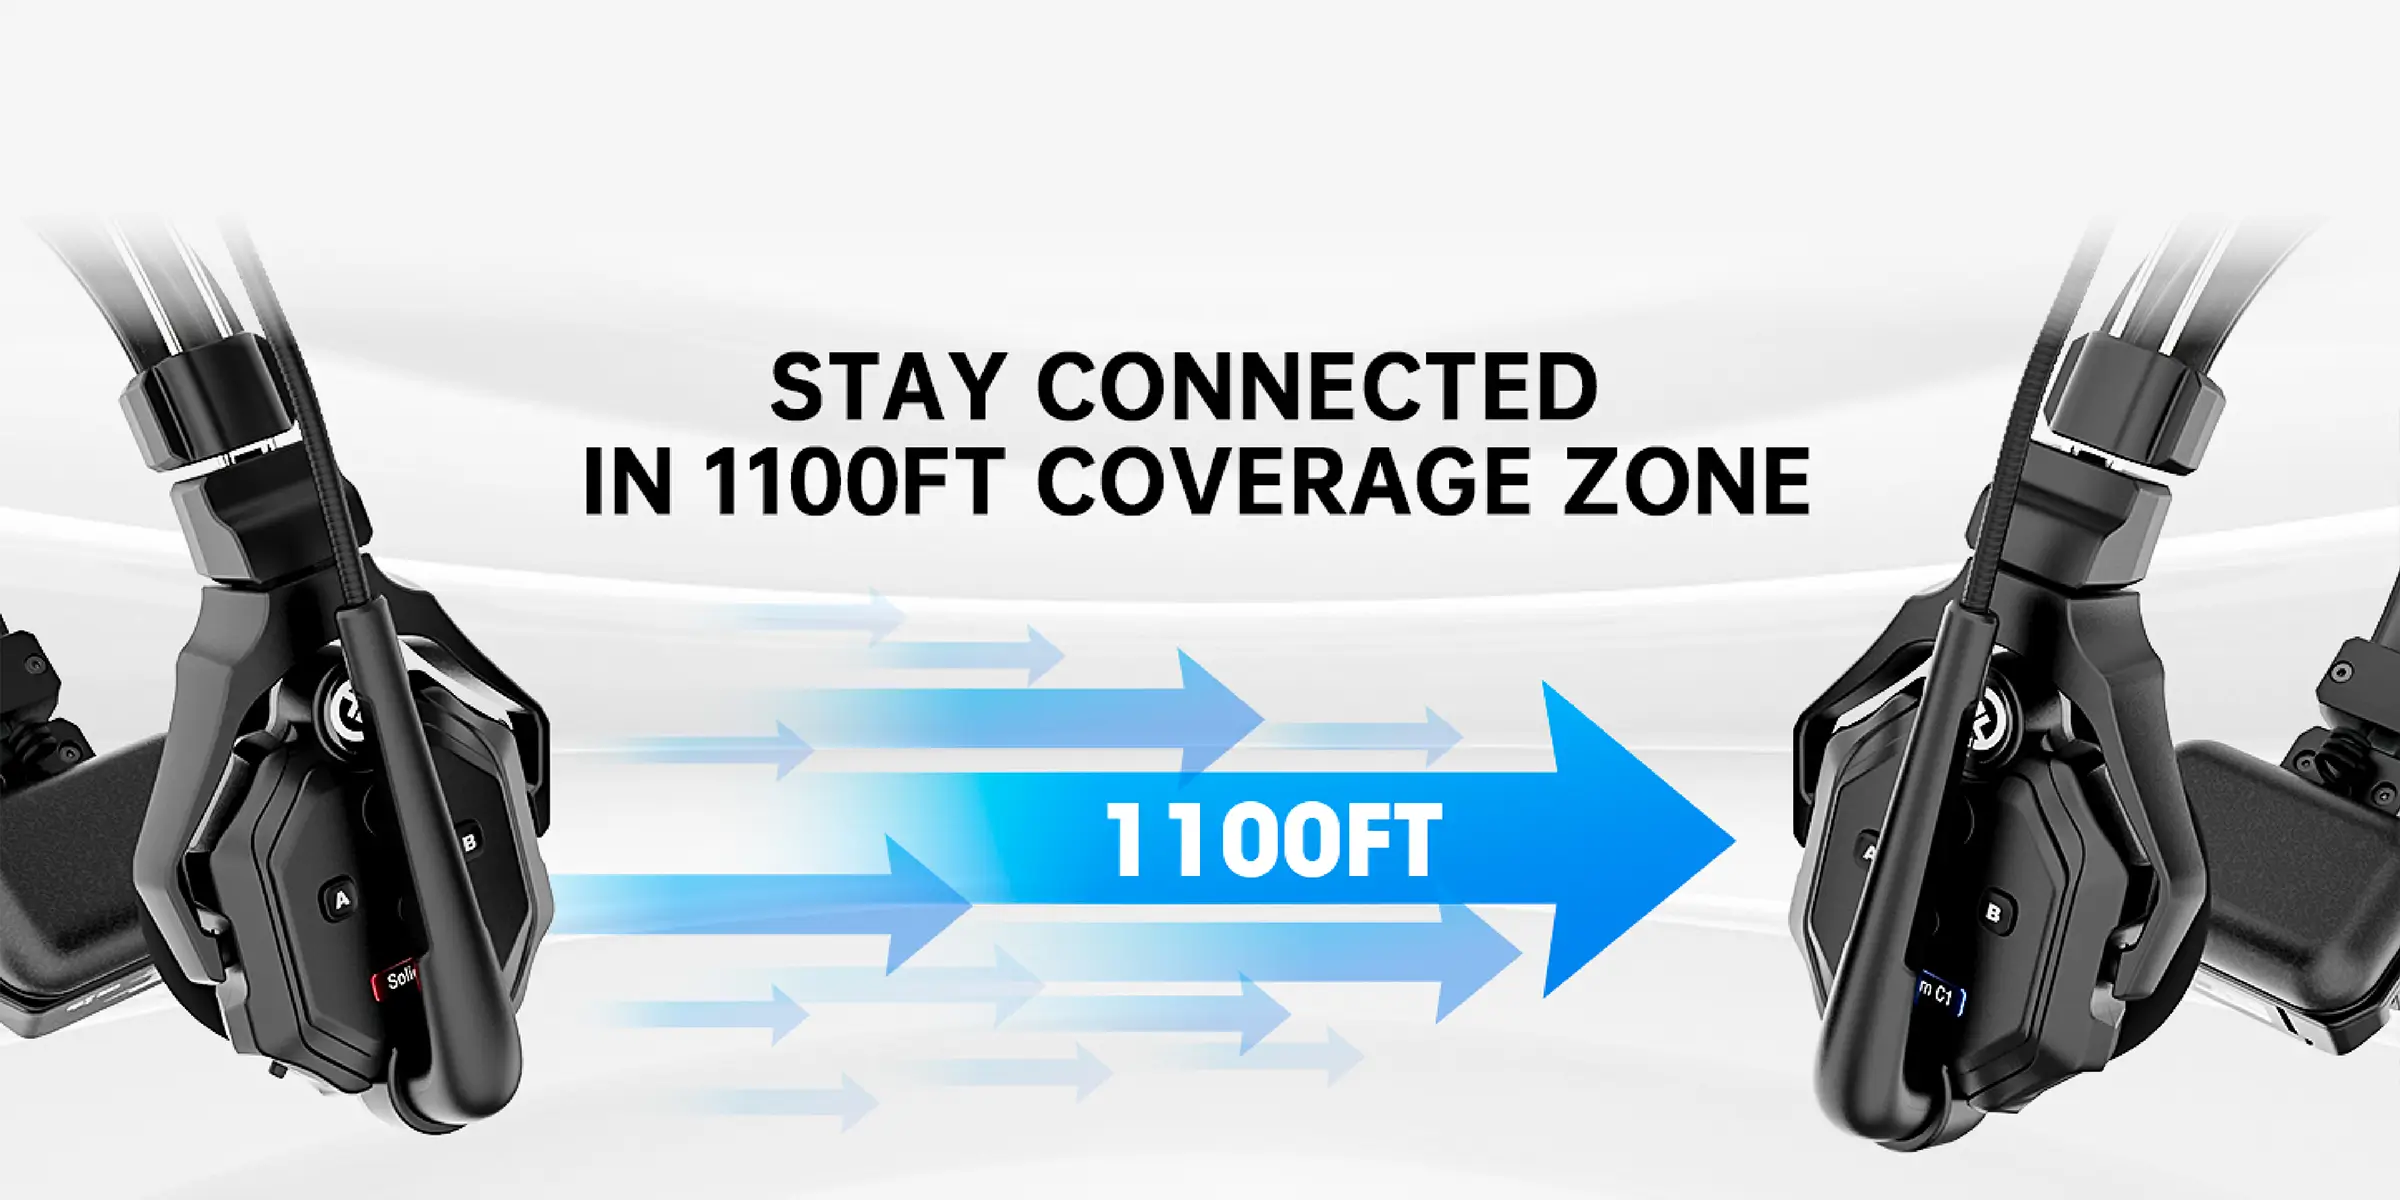 سیگنال‌دهی اینترکام بیسیم Solidcom C1 تا فاصله 300 متری (1000 فیت) بصورت پایدار و بدون قطعی انجام میشود.